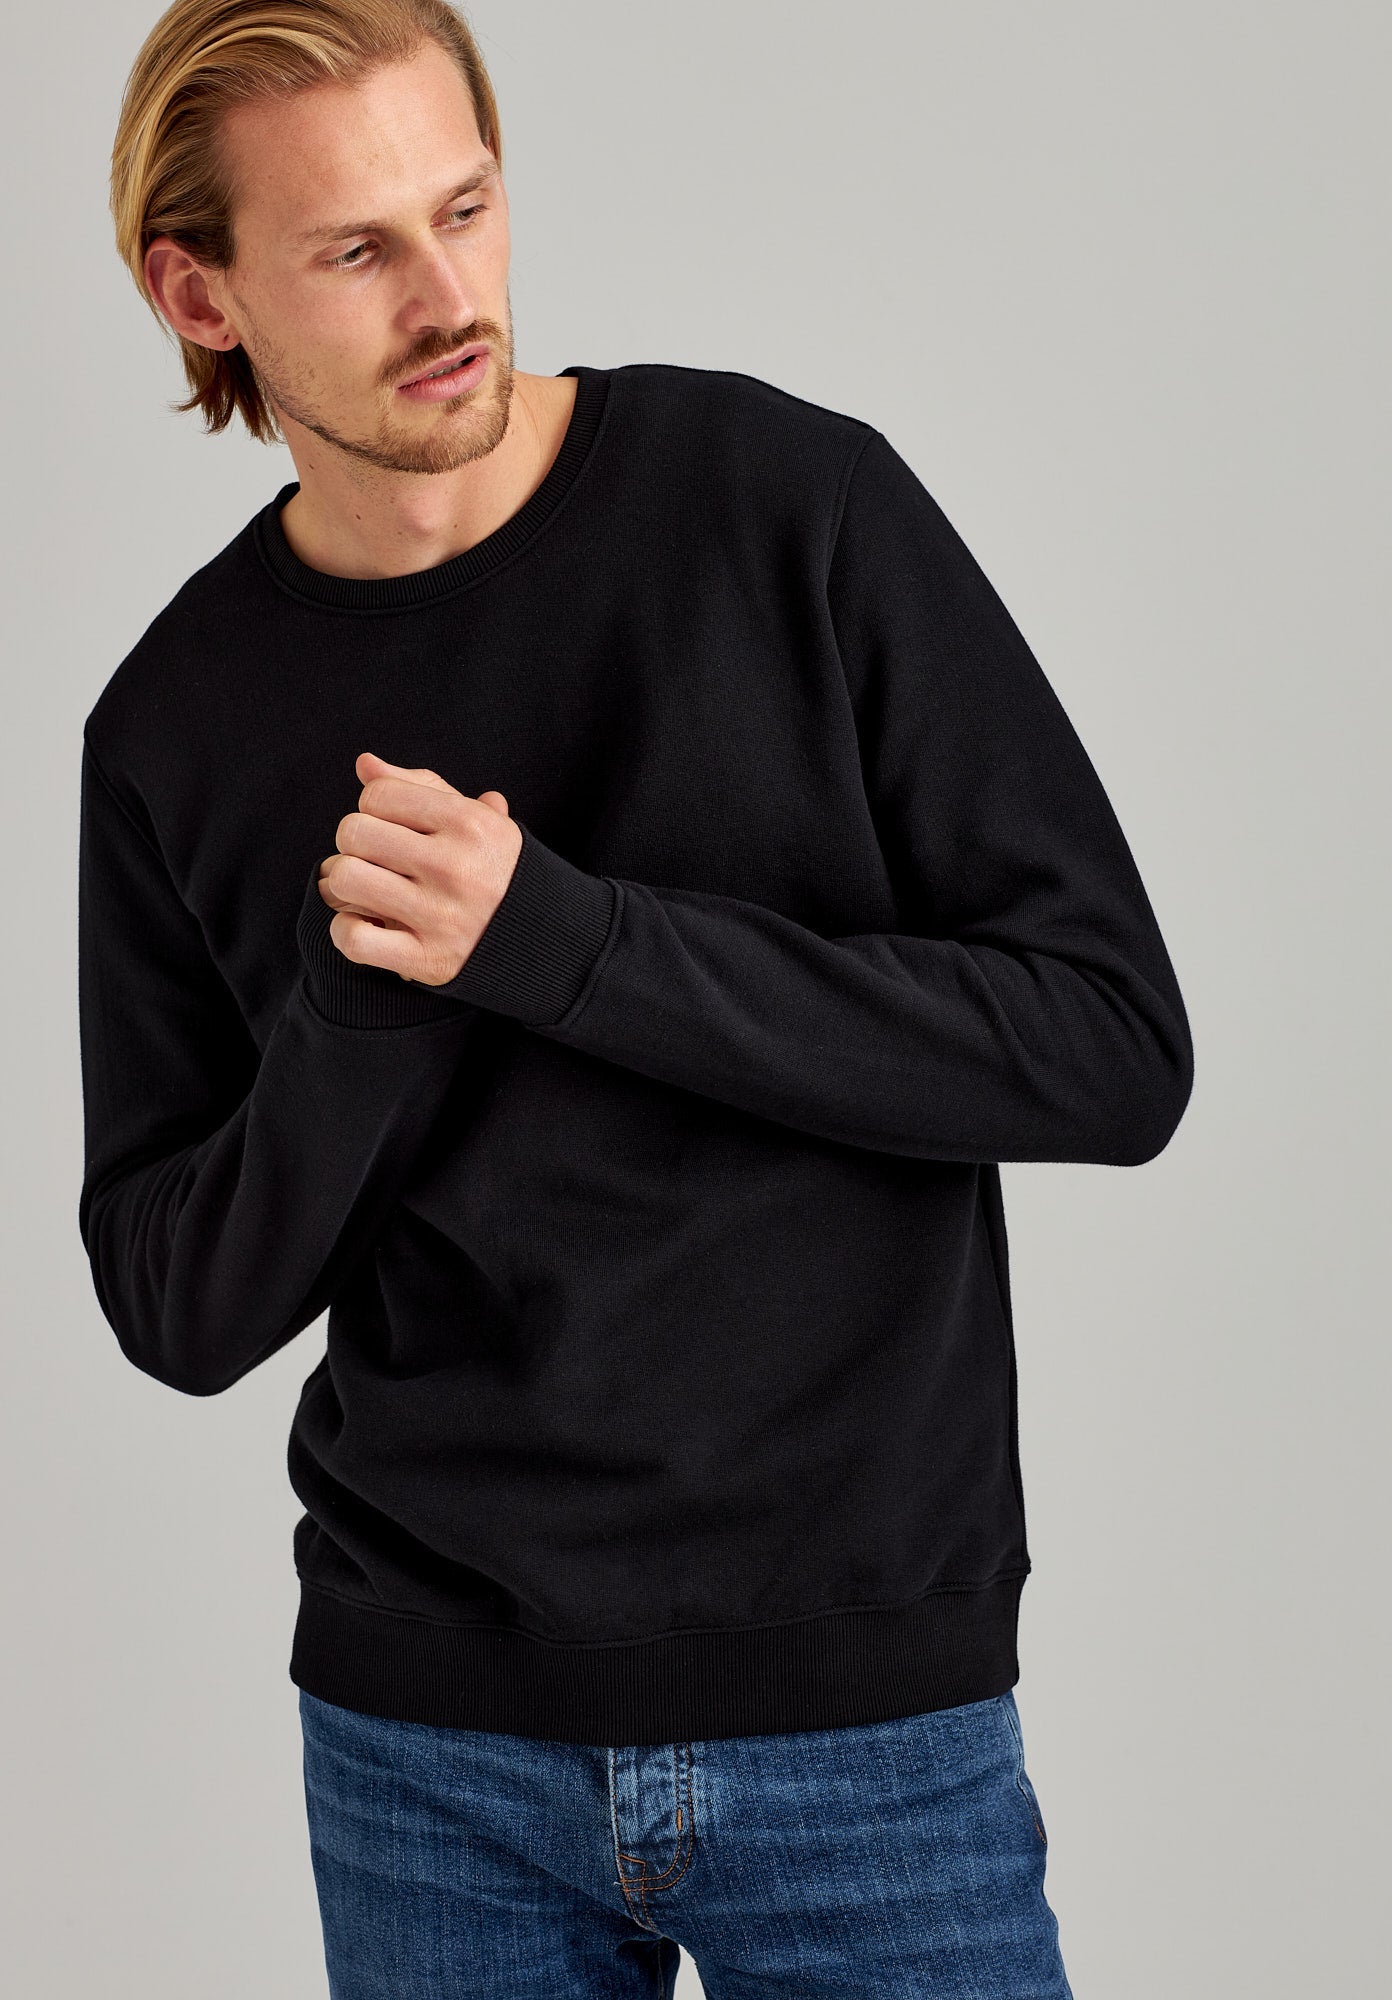 Schwarzer Sweater TT1029 aus 100% Bio-Baumwolle von Thokkthokk Sweater